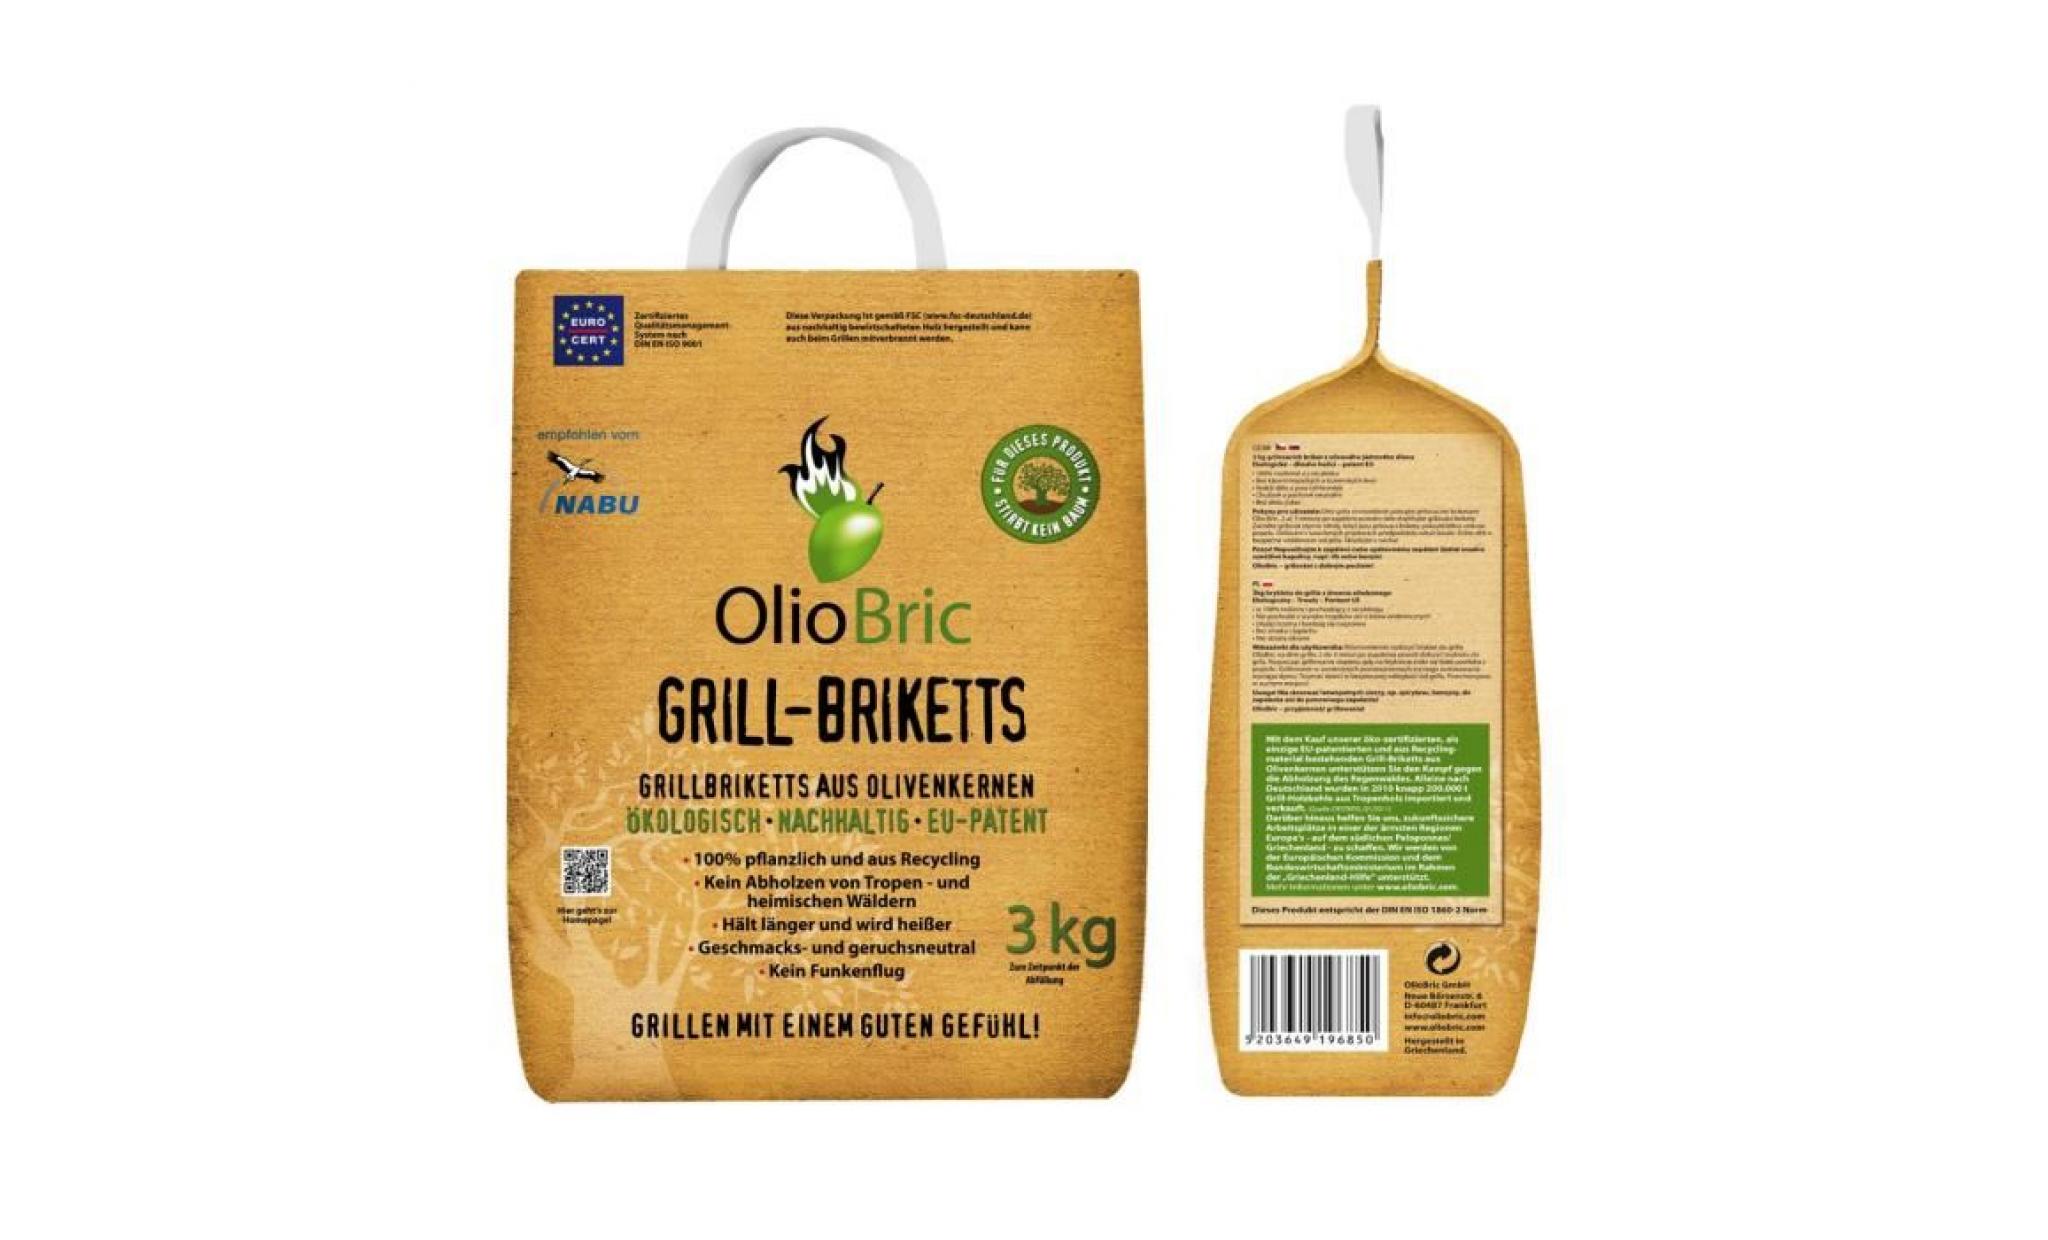 olio bric, 3 kg grill brikett fabriqué a partir d'huile de pépin d'olives